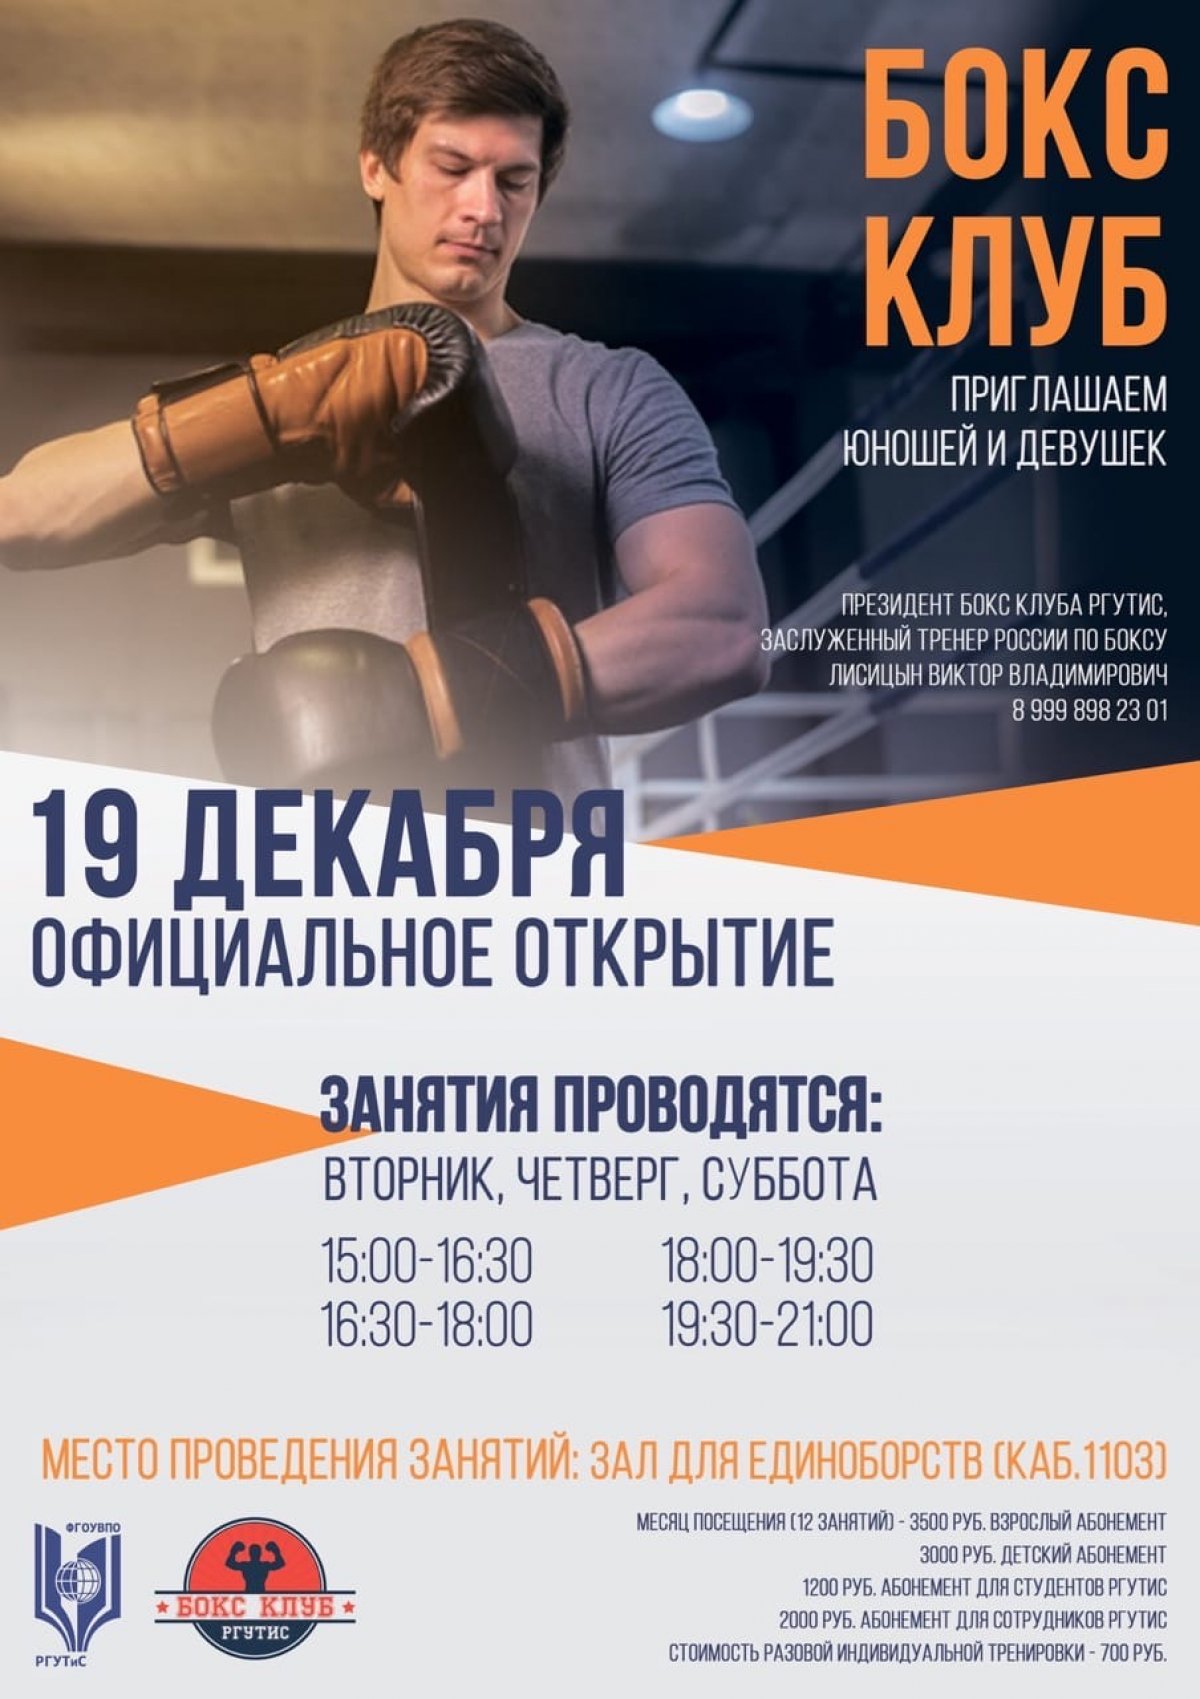 БОКС-КЛУБ Новость от 18-12-2019